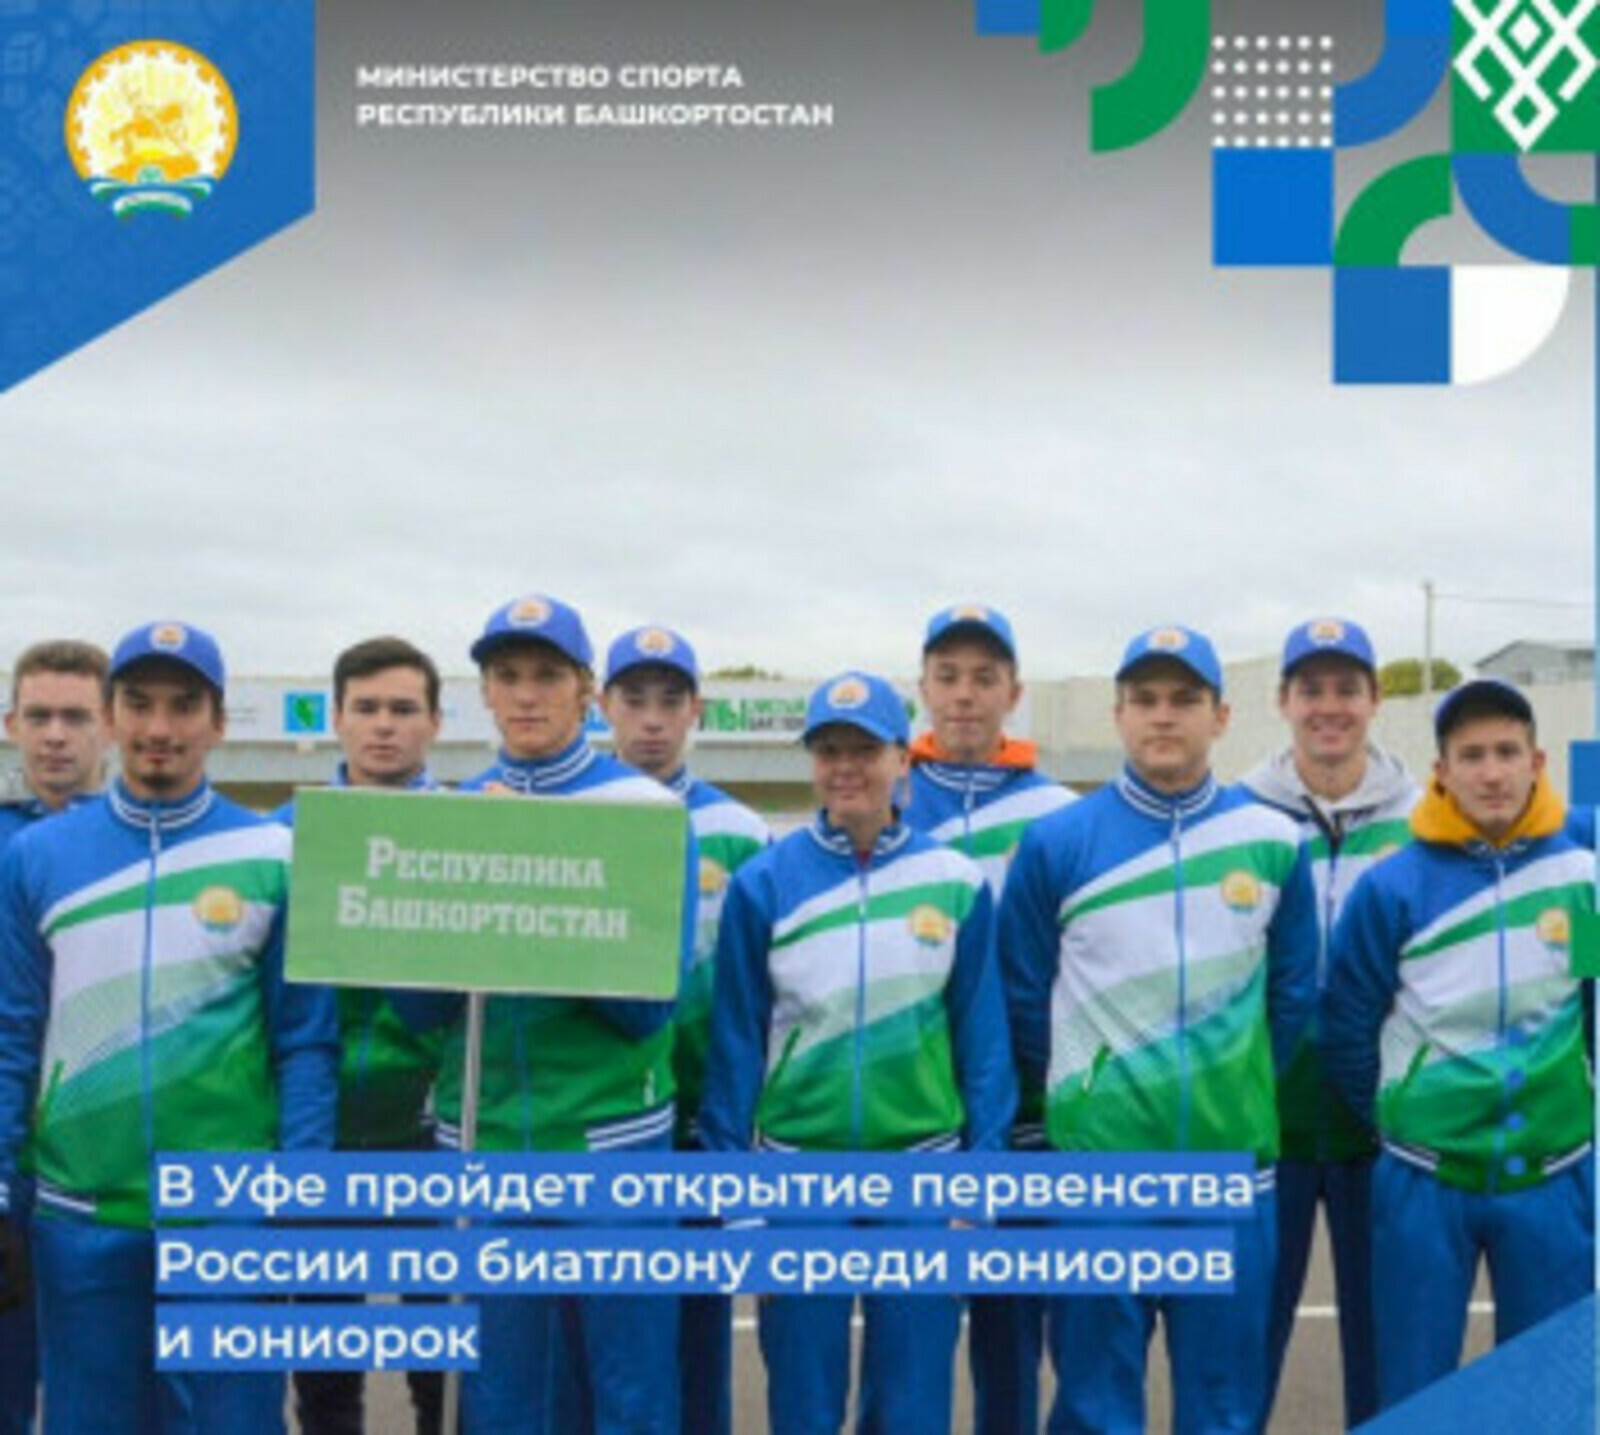 В Уфе пройдет открытие первенства России по биатлону среди юниоров и юниорок